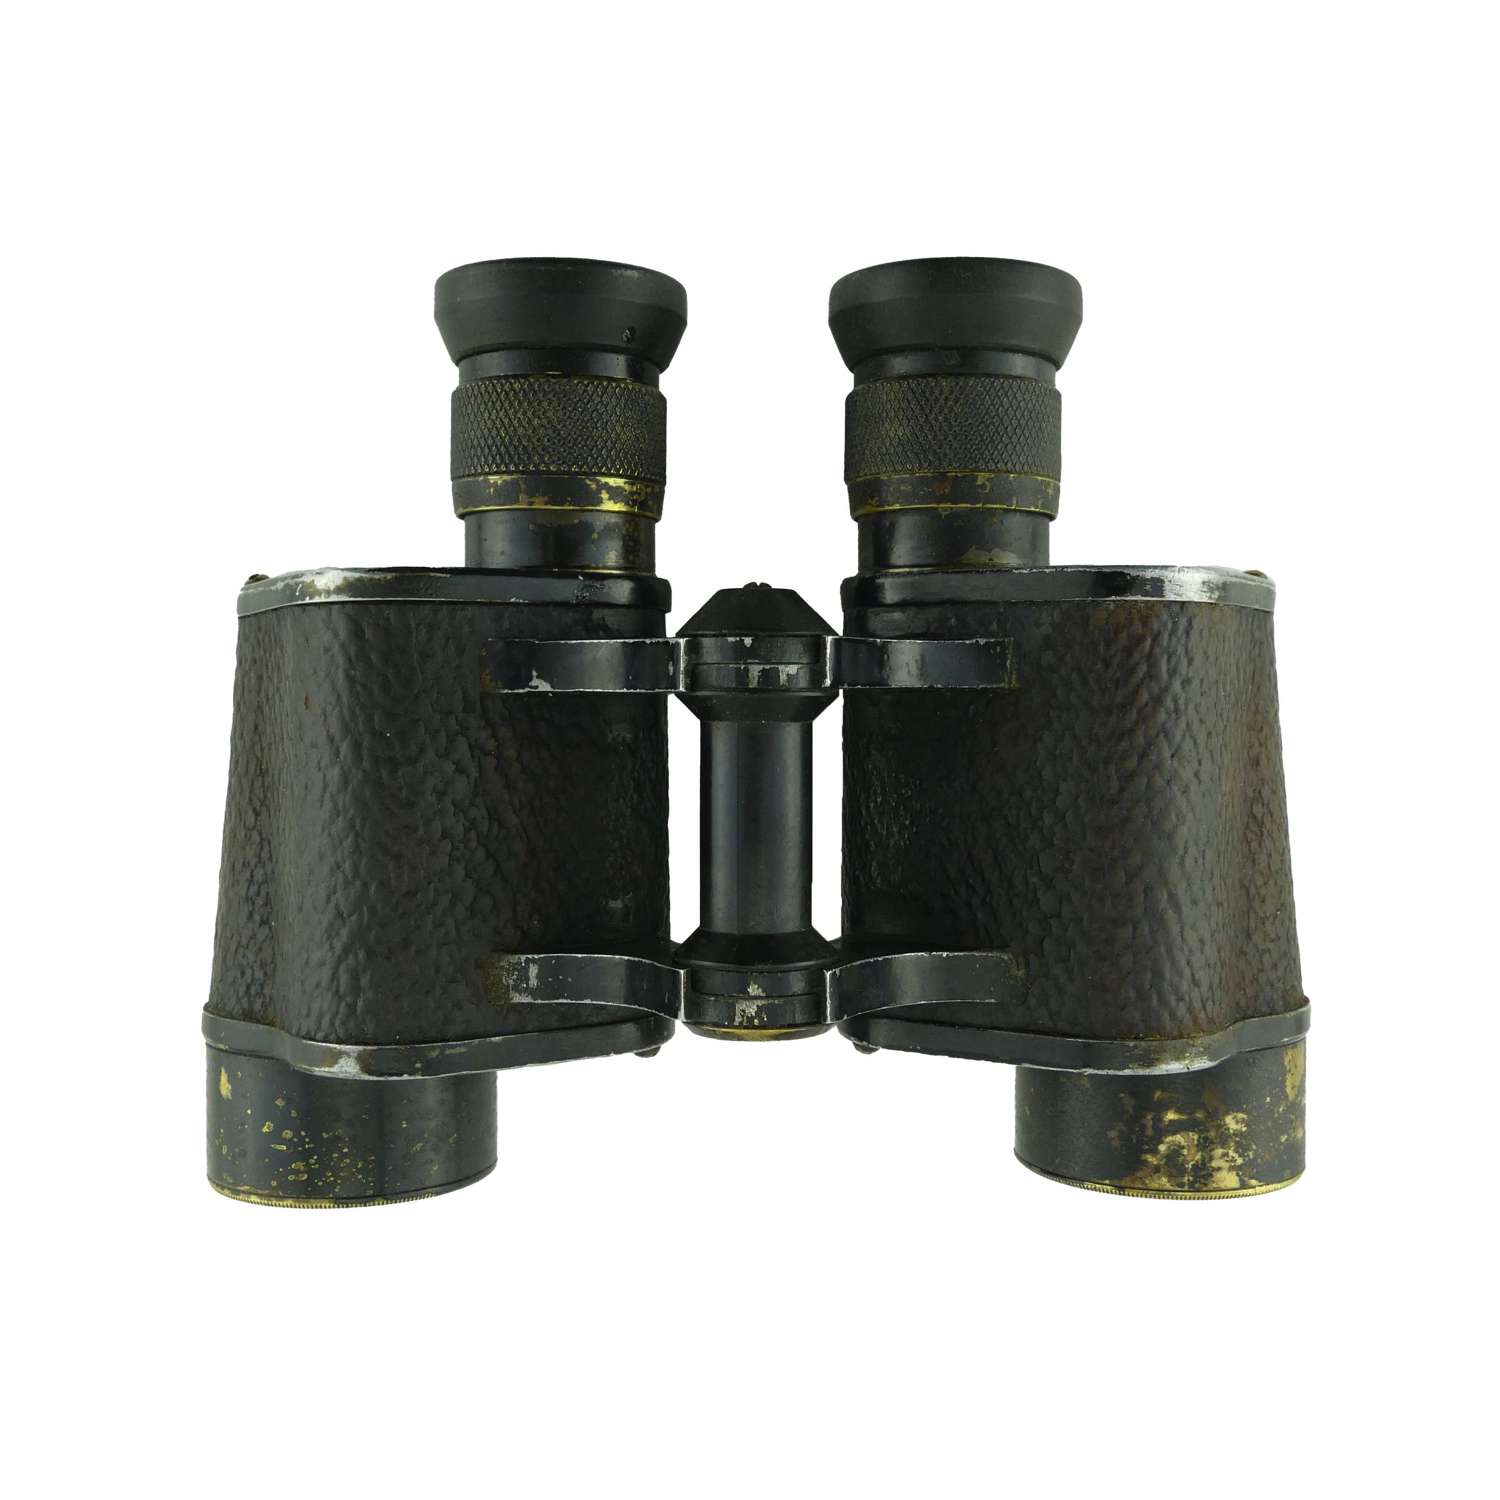 Air Ministry binoculars